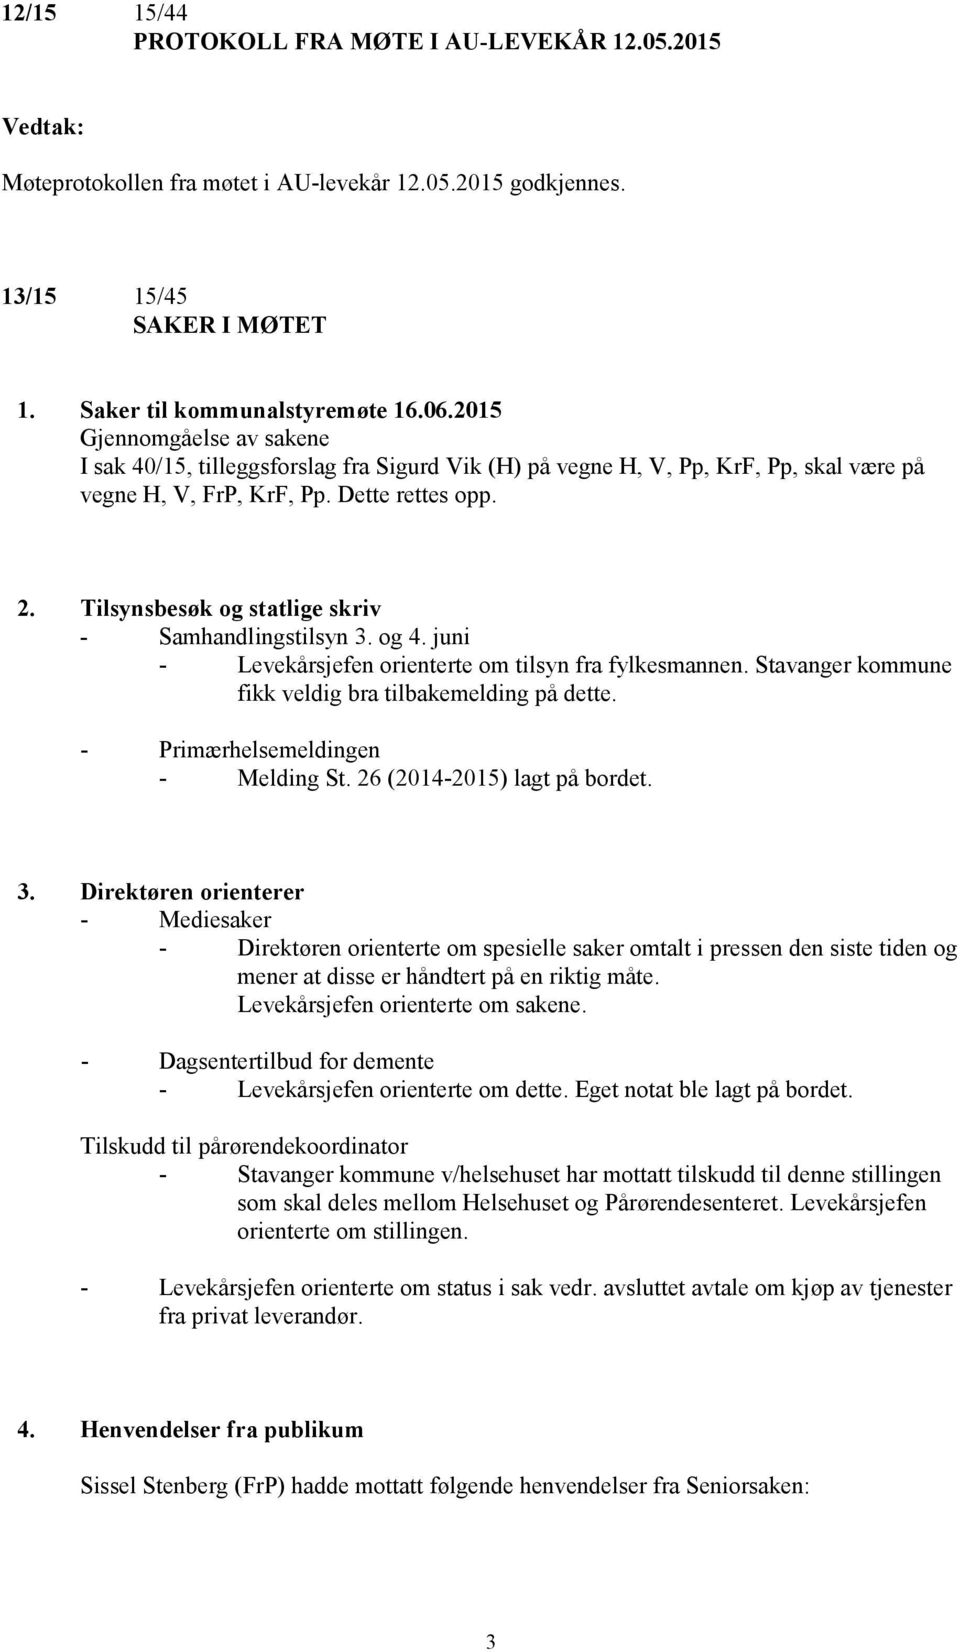 Tilsynsbesøk og statlige skriv - Samhandlingstilsyn 3. og 4. juni - Levekårsjefen orienterte om tilsyn fra fylkesmannen. Stavanger kommune fikk veldig bra tilbakemelding på dette.